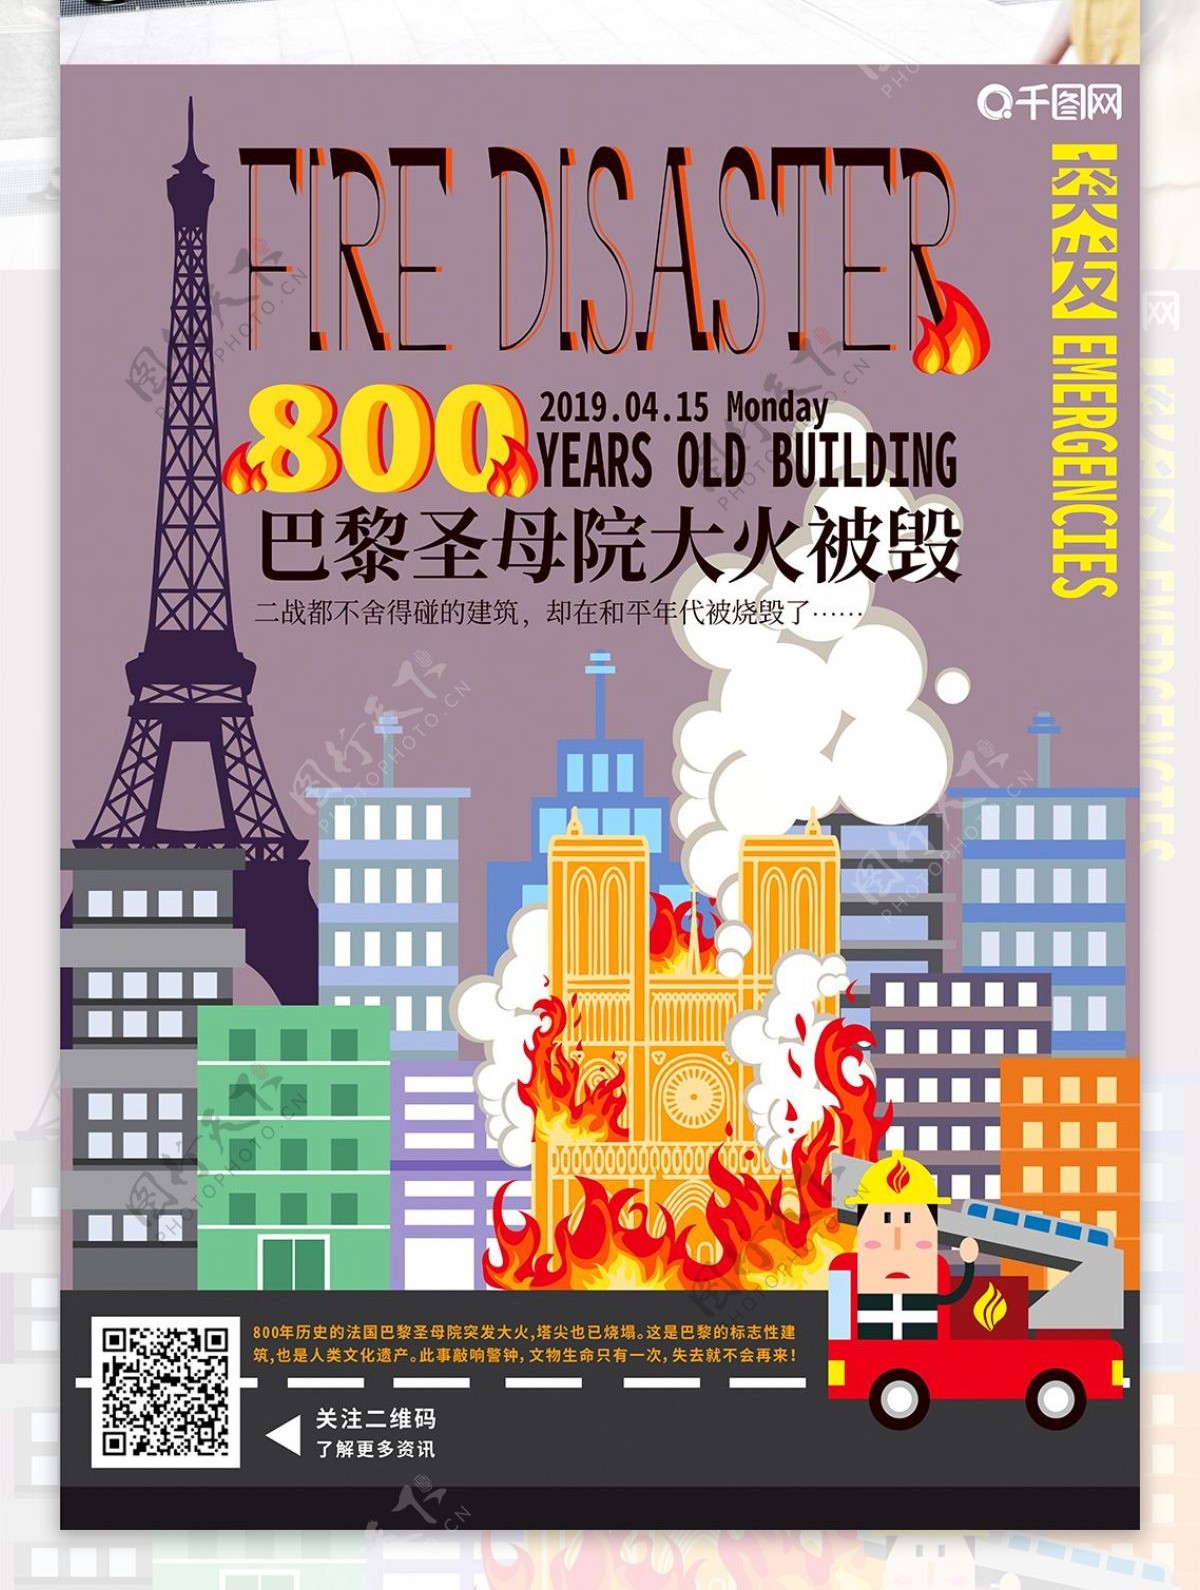 手绘建筑巴黎圣母院大火事件海报宣传单